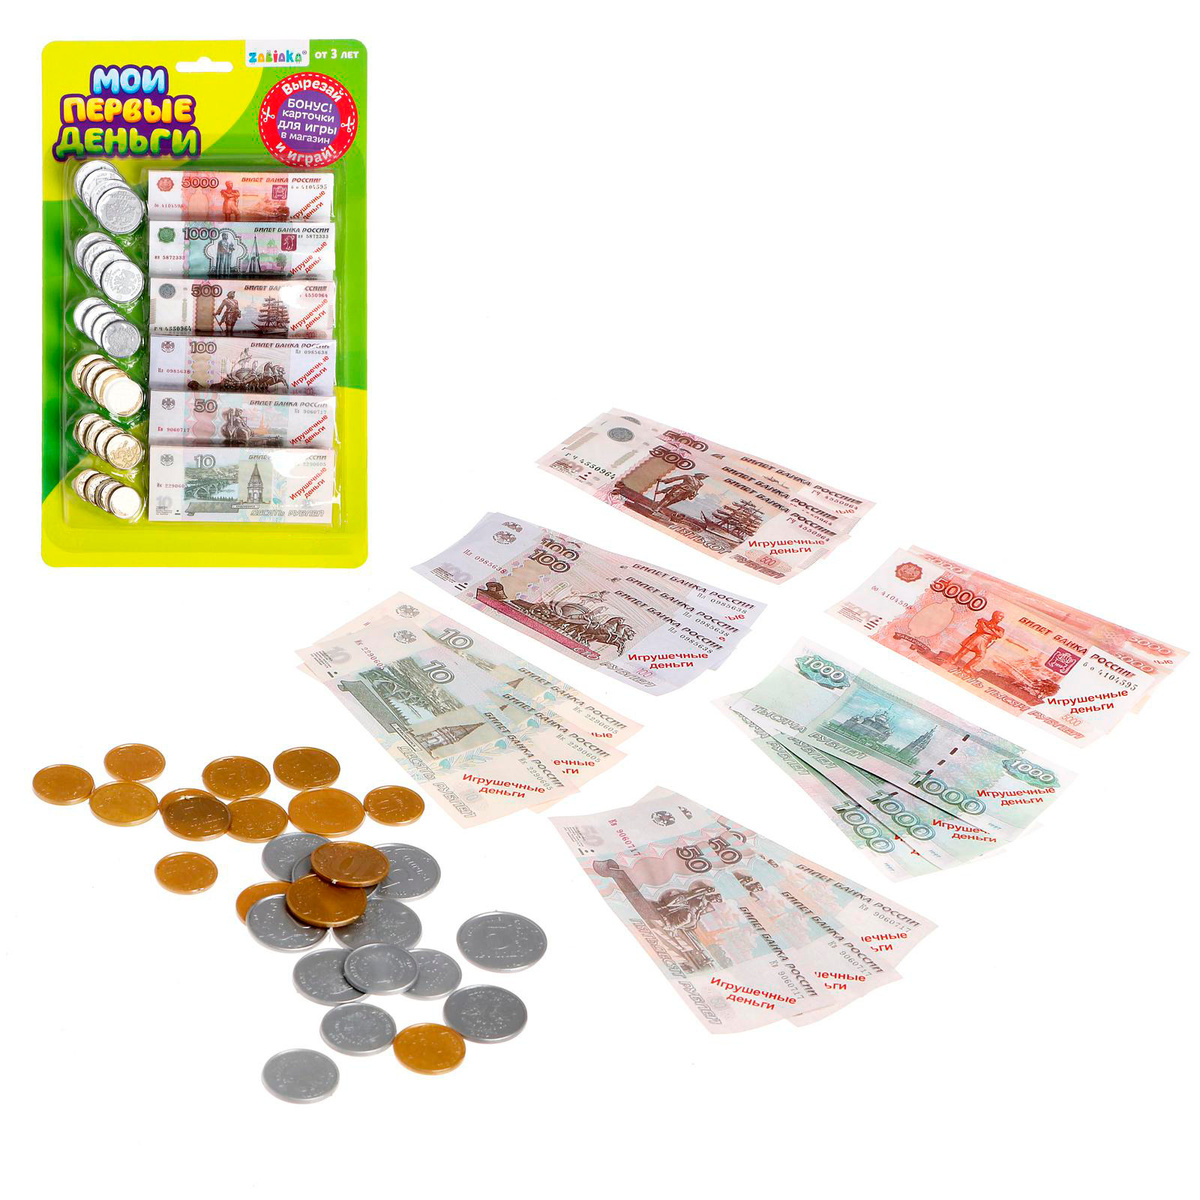 Игровой набор ZABIAKA "Мои первые деньги", купюры, банкноты 18 шт, монеты 24 шт, игрушечные деньги, размеры #1